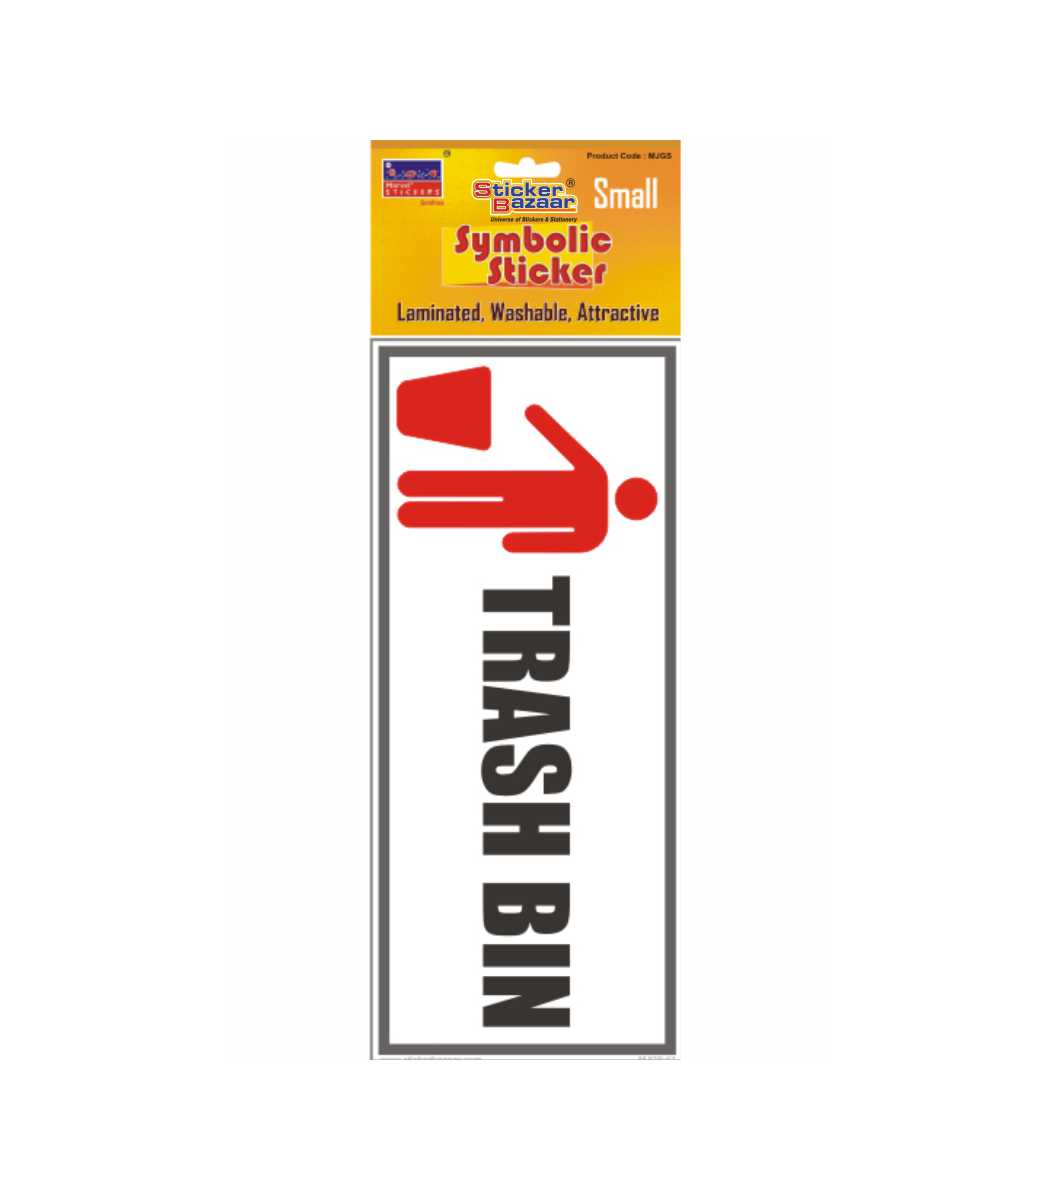 Trash Bin Small Symbolic Sticker